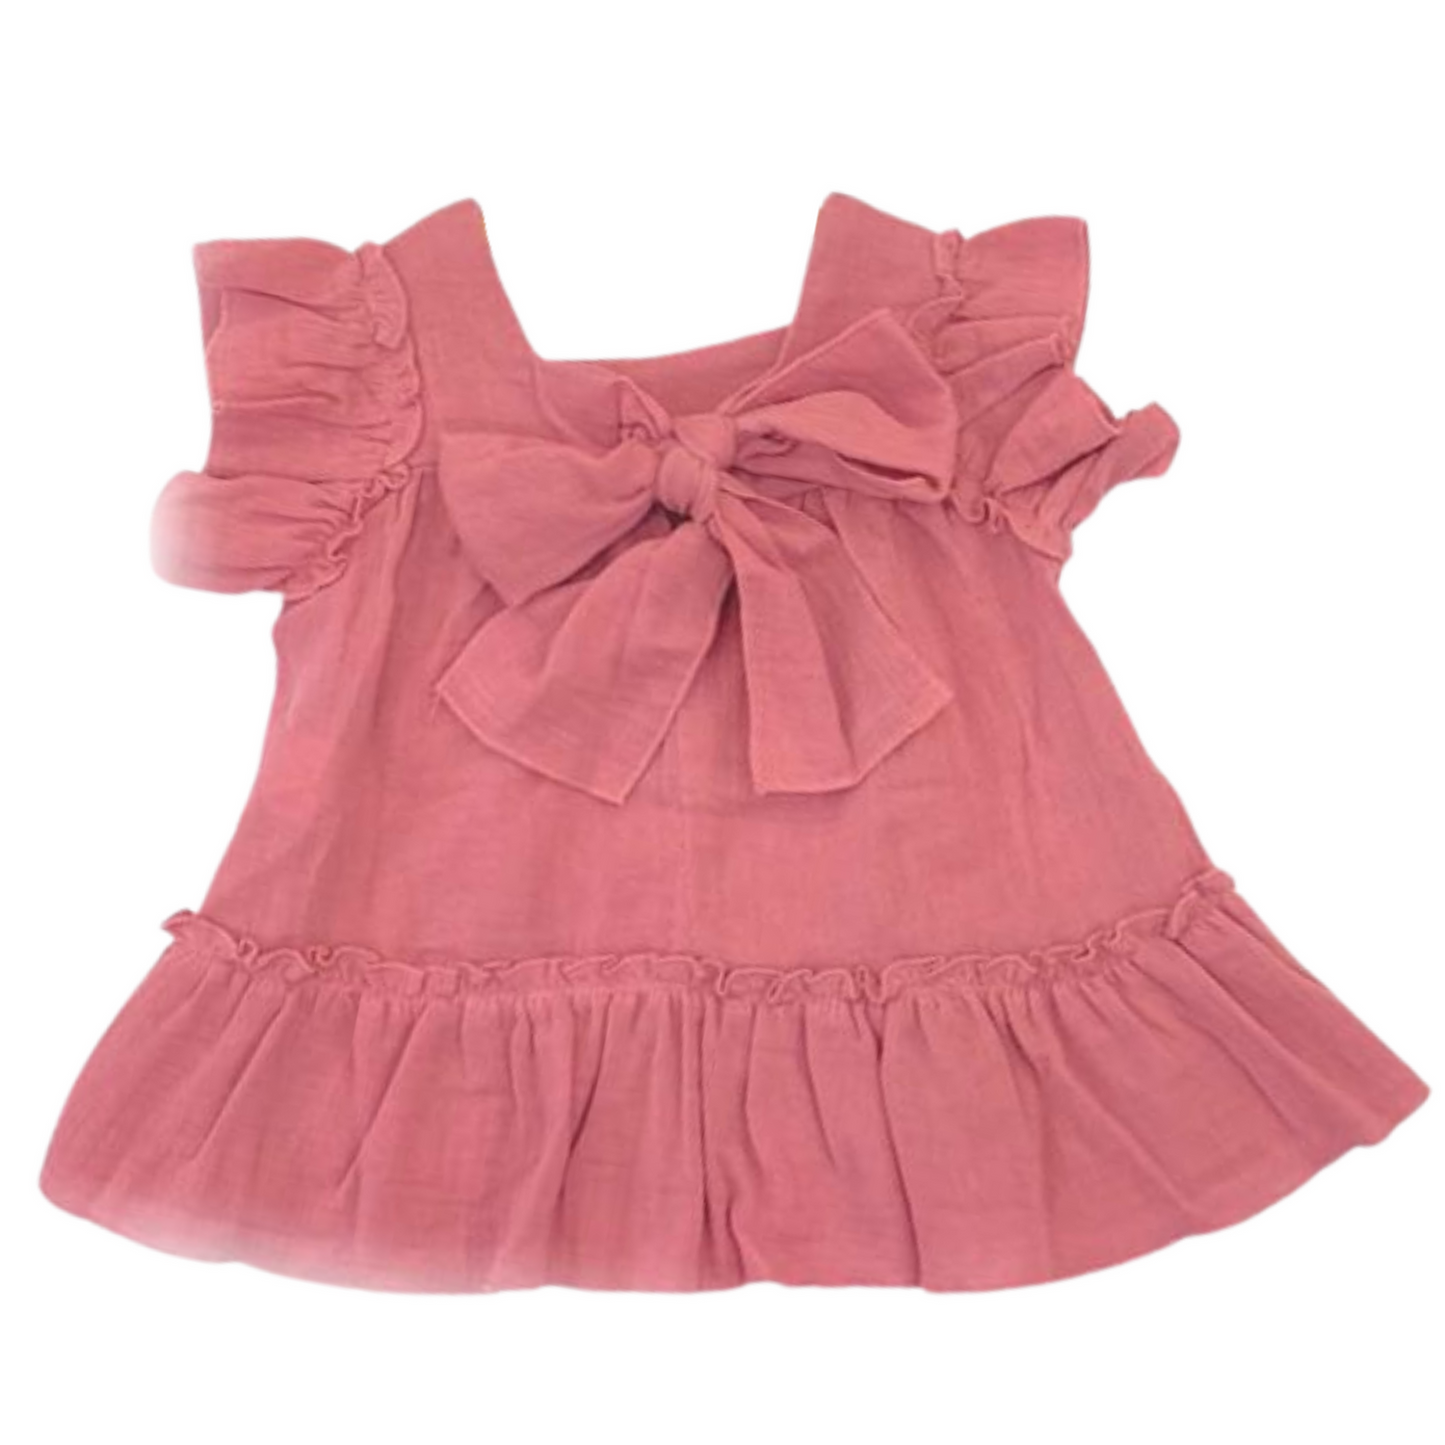 Baby Girl Rose dress